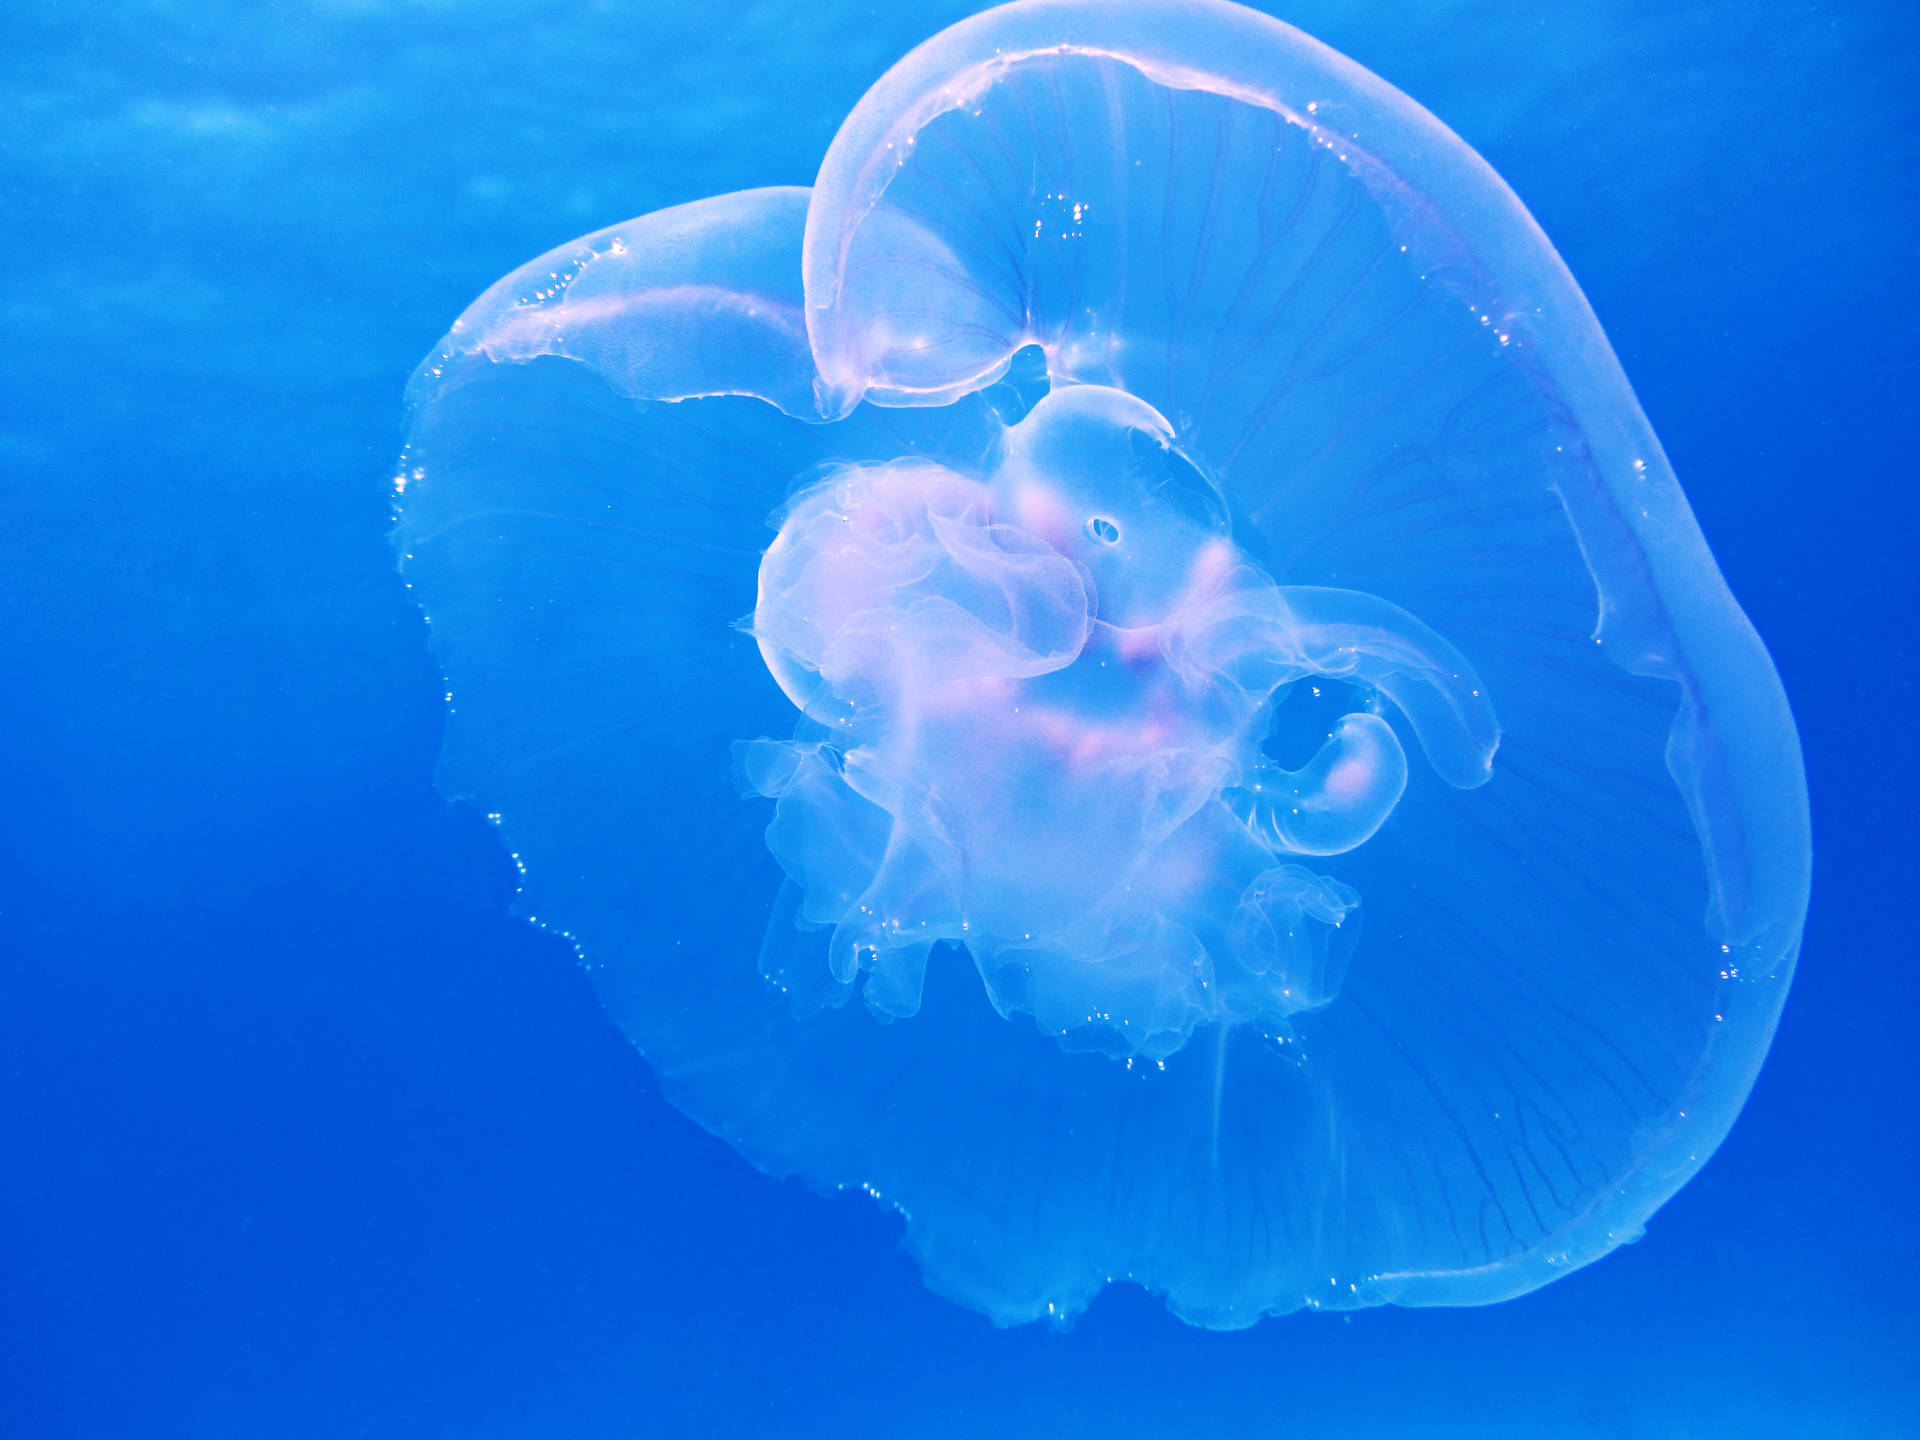 White Translucent Jellyfish In Underwater Background